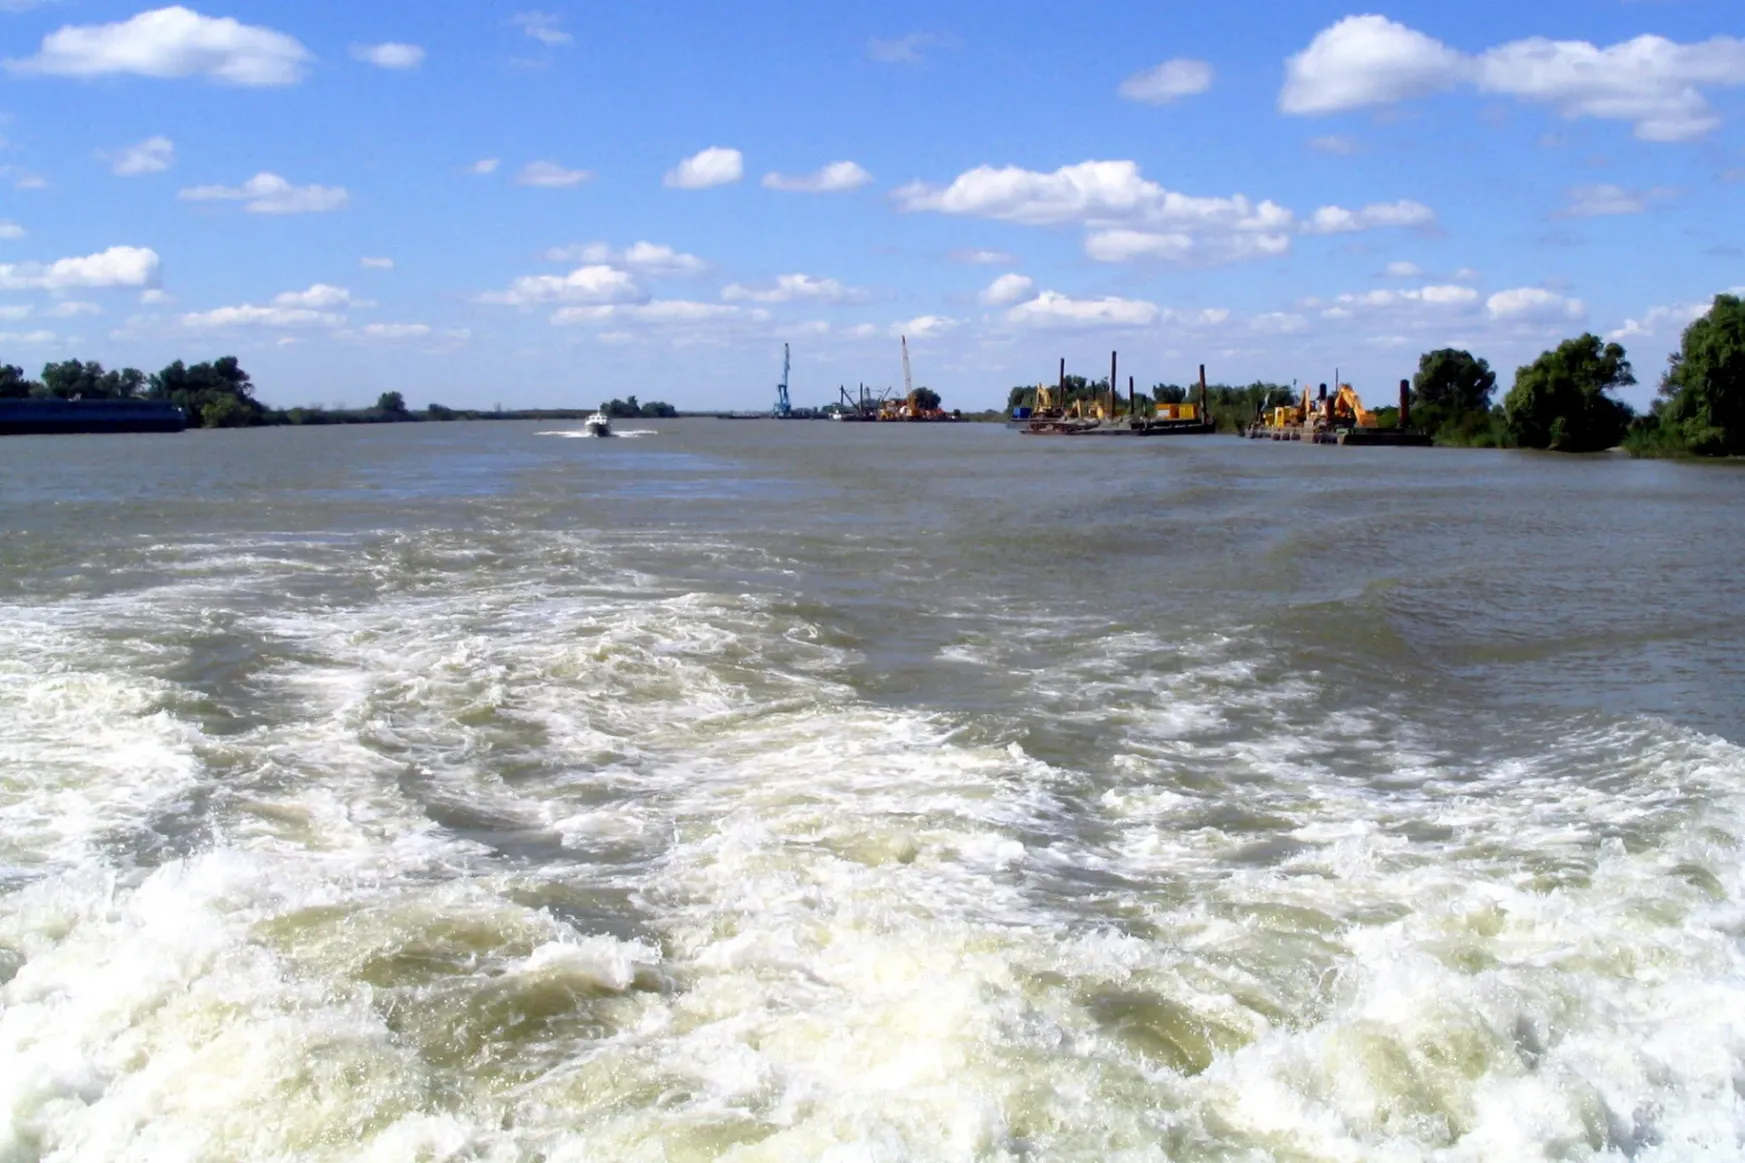 Tönkretehetik az ukránok a Duna-delta élővilágát egy csatornamélyítéssel